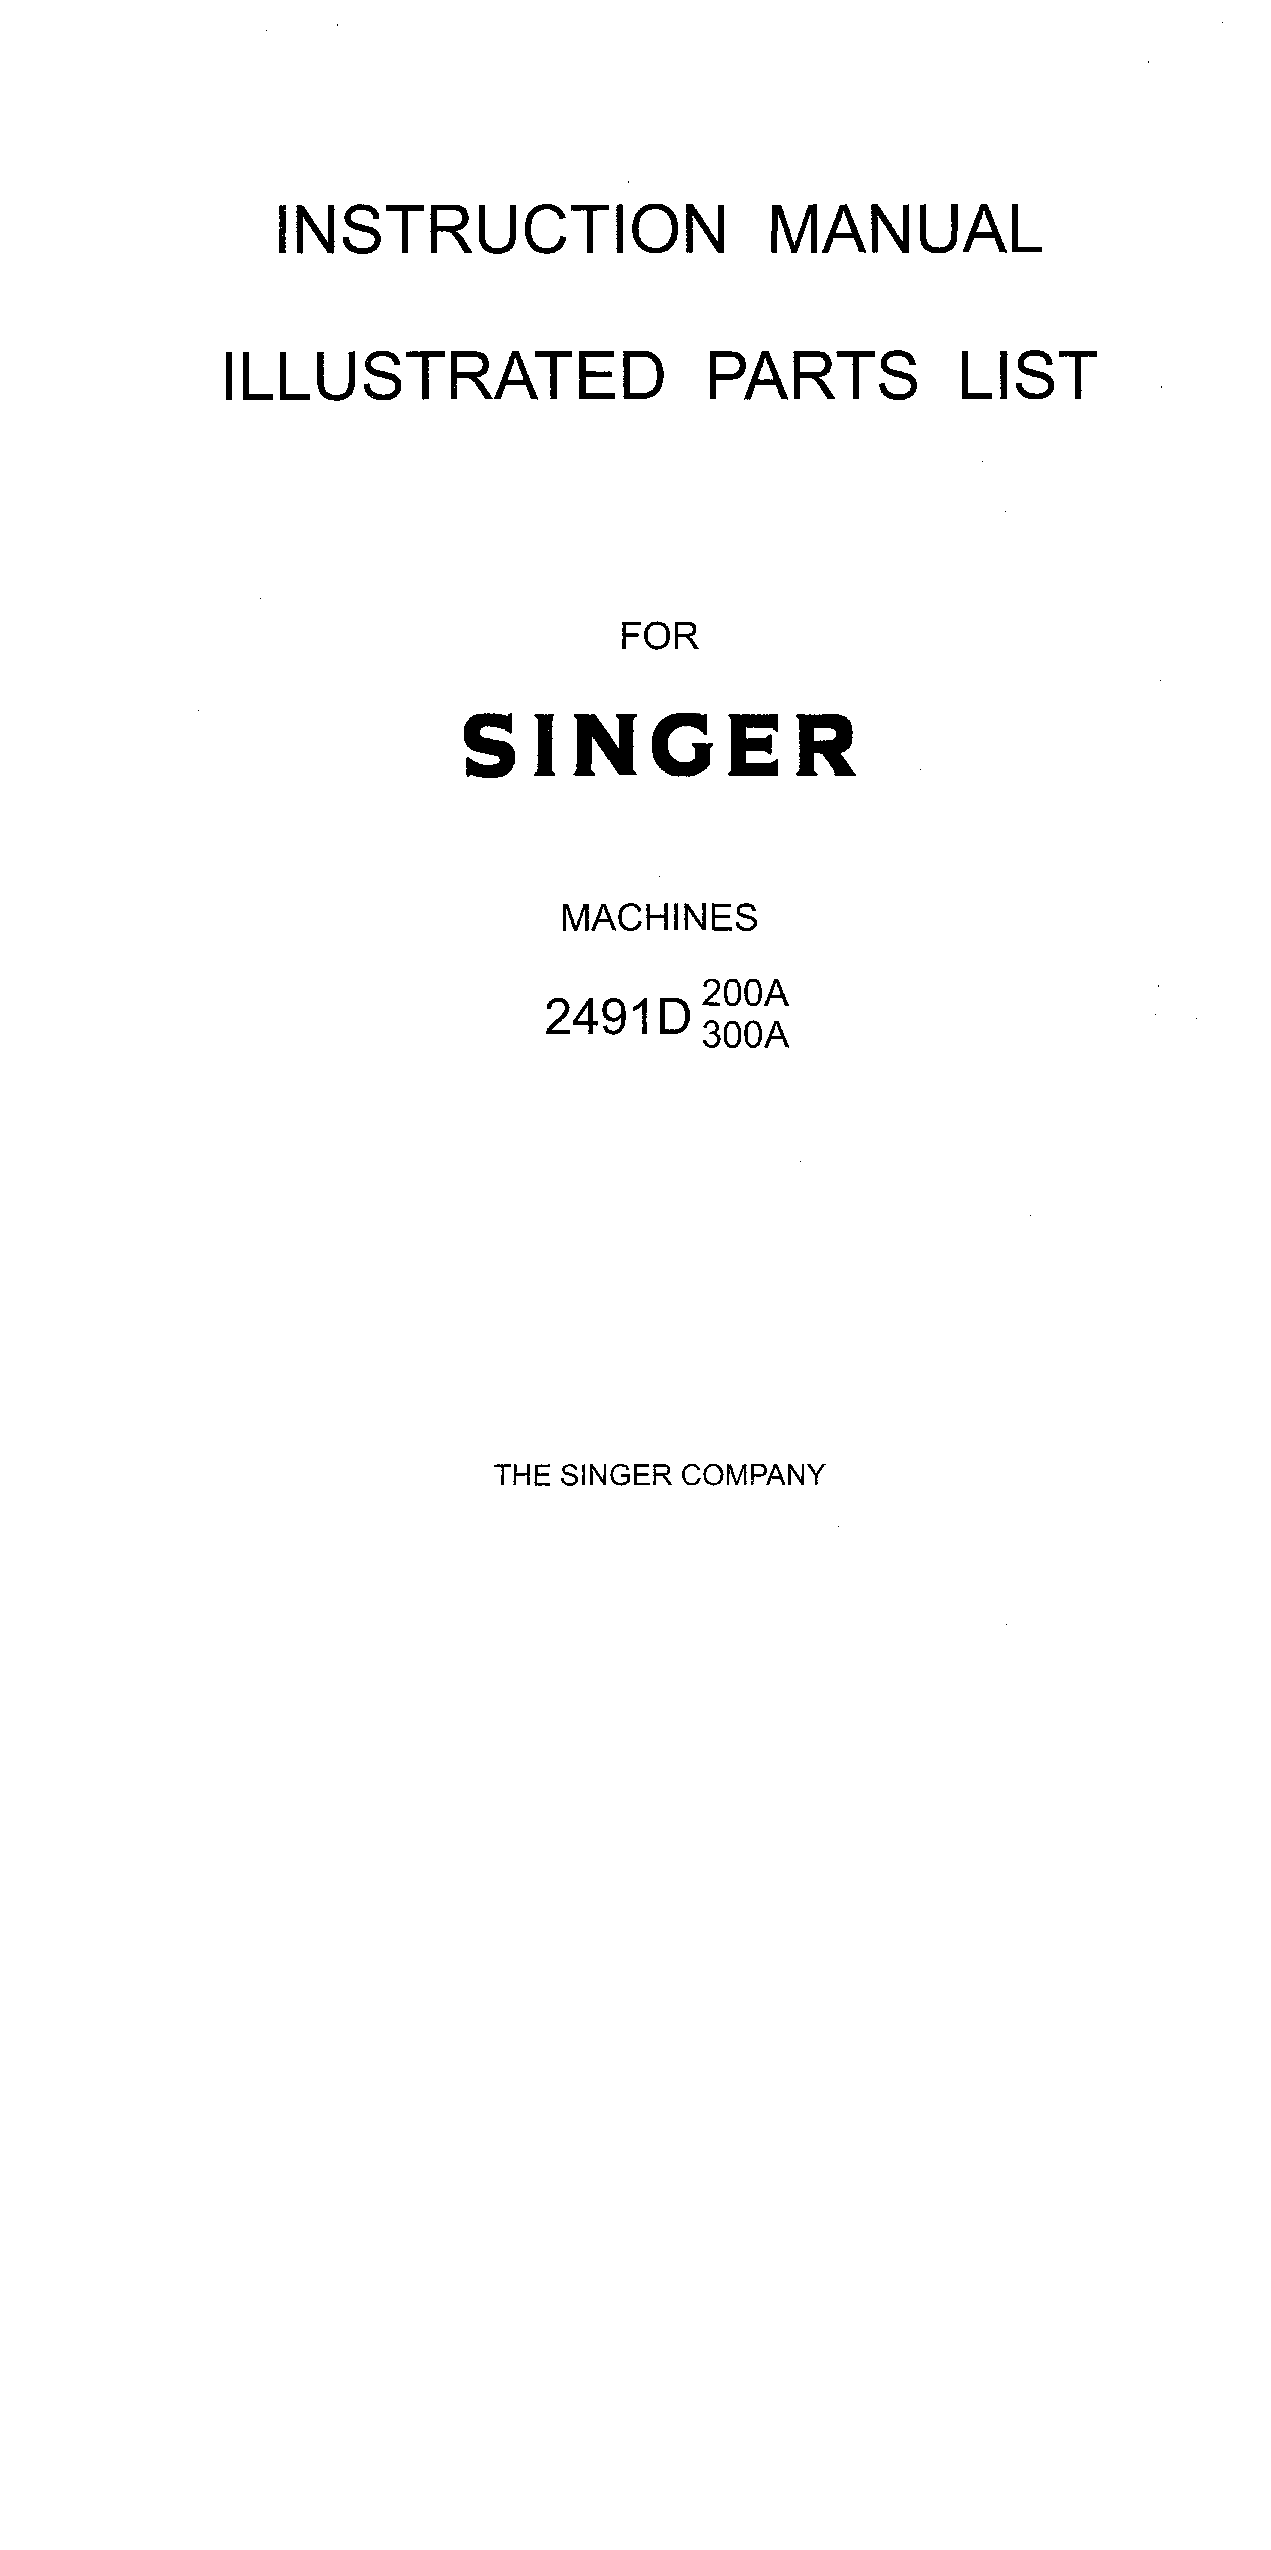 Singer 2491D 300A, 2491D 200A User Manual